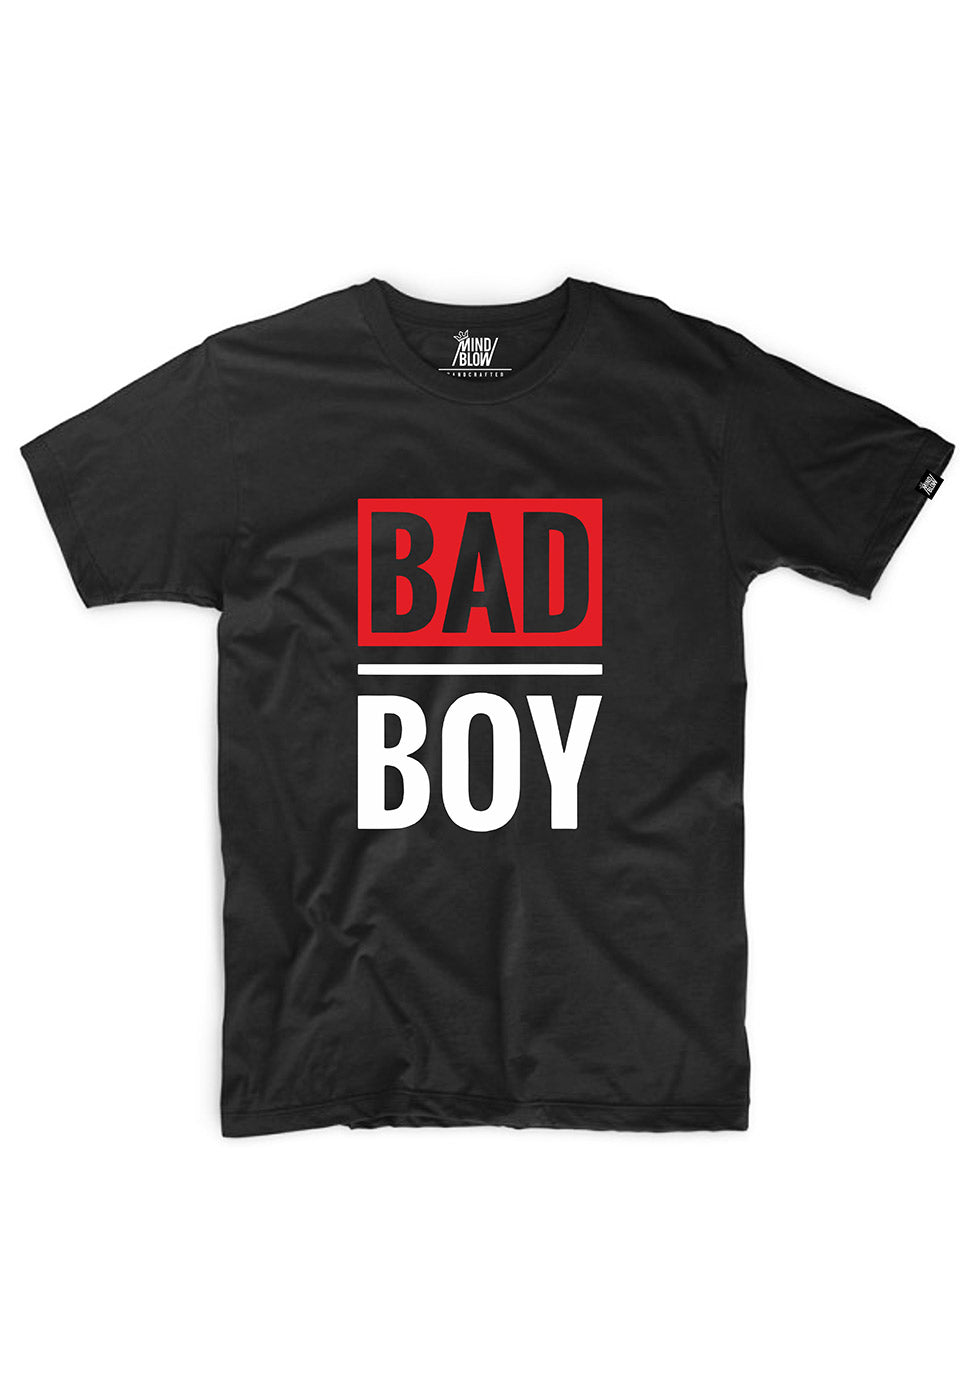 BAD-BOY-2